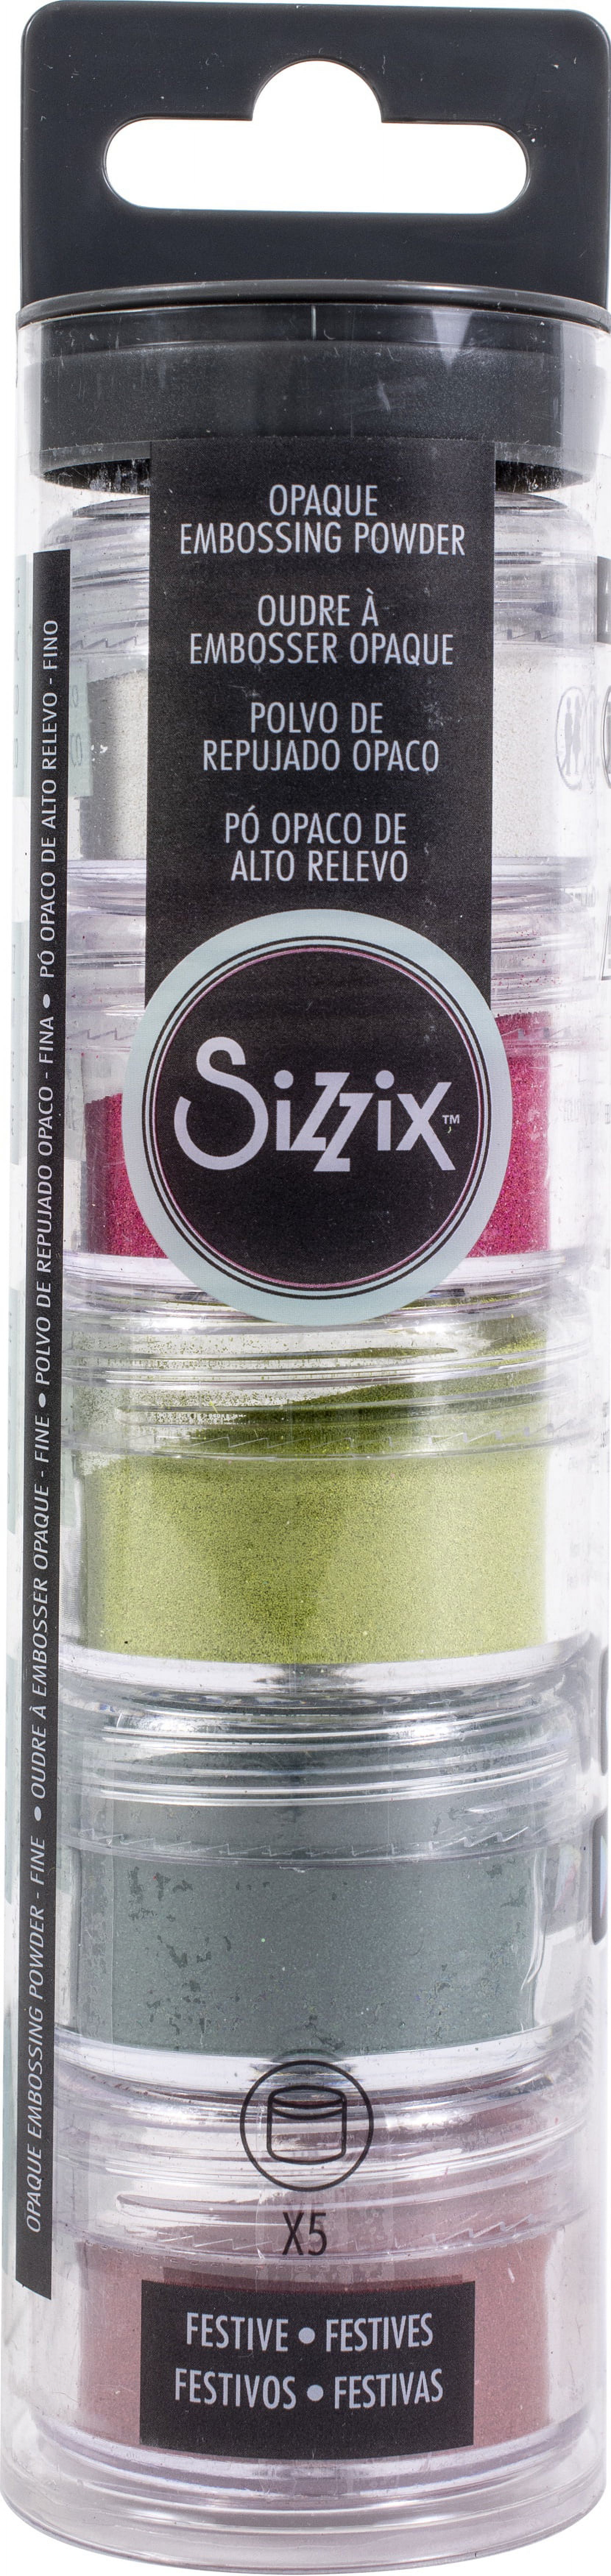 Sizzix Festive - image 1 of 3